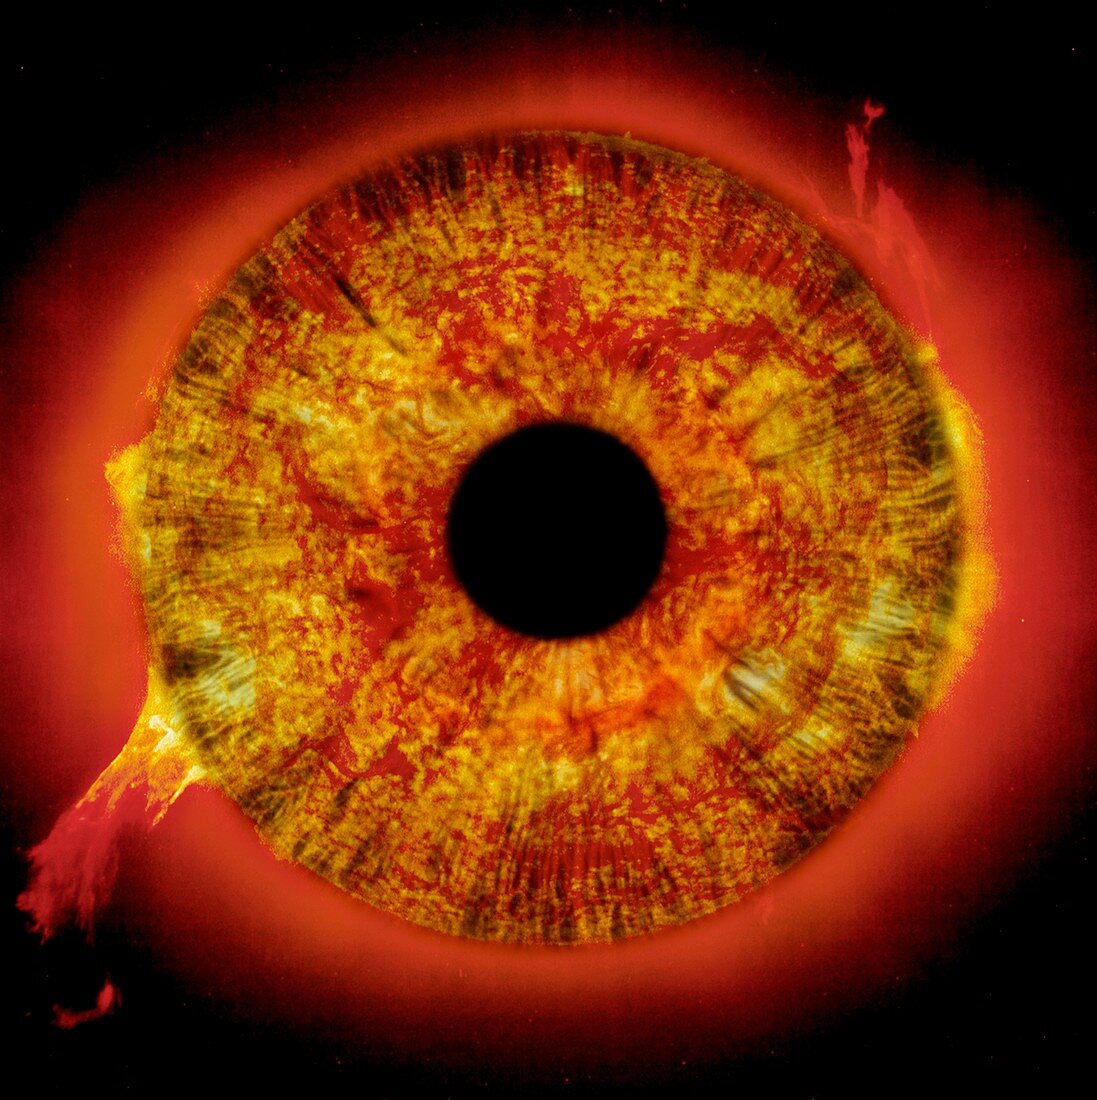 Burning eye,composite image